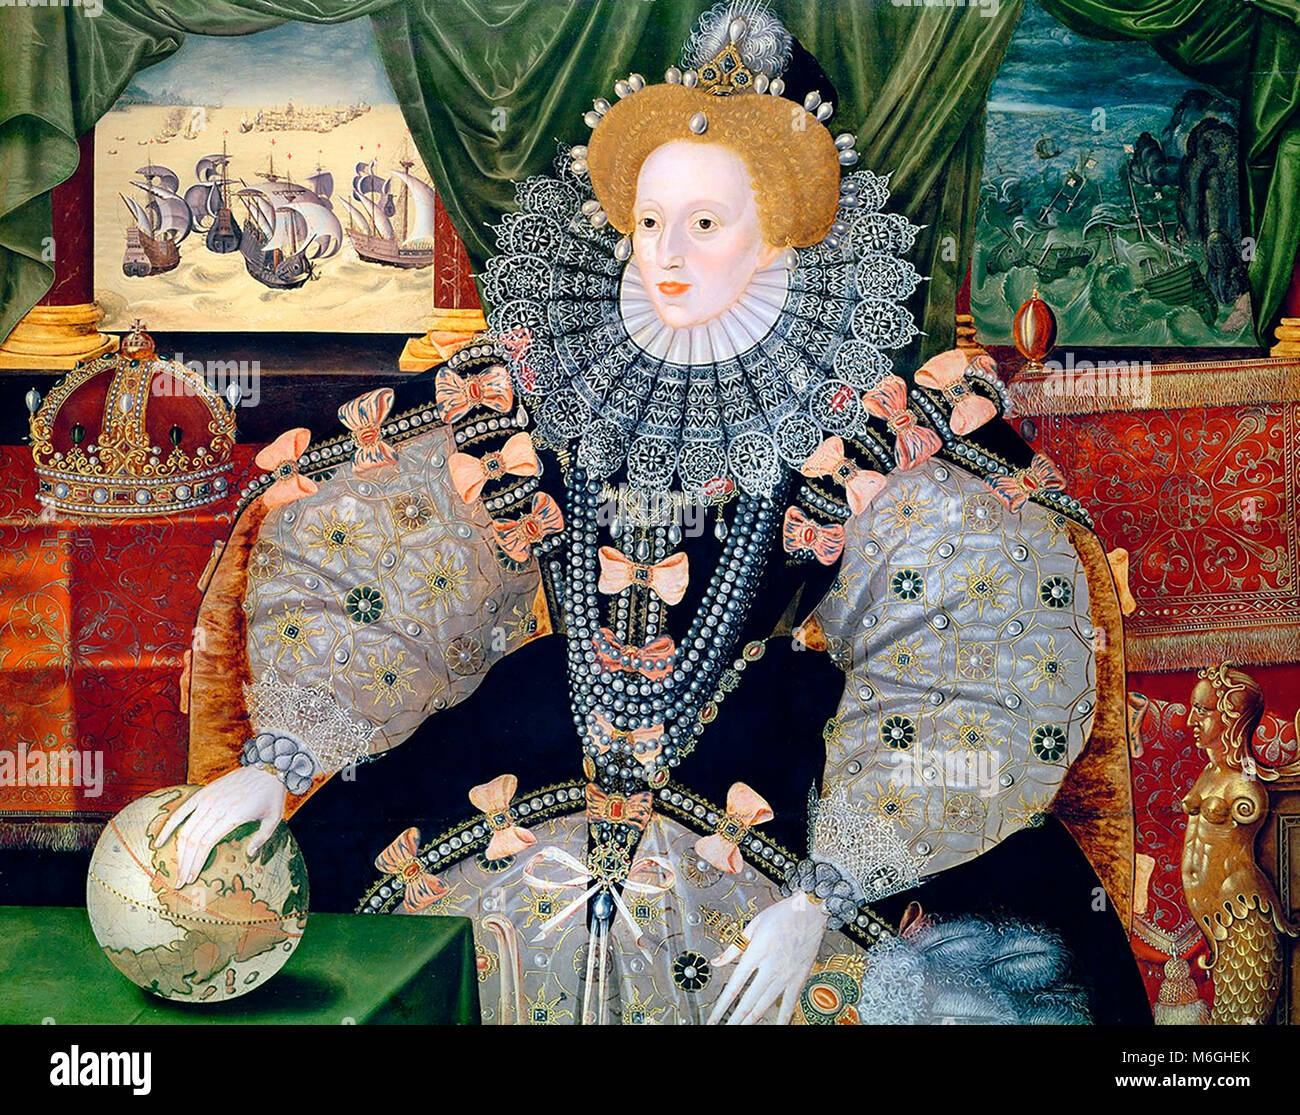 Portrait von Elisabeth I. von England, der Armada Portrait. Das Porträt wurde die Niederlage der Spanischen Armada zu gedenken (im Hintergrund dargestellt). Queen Elizabeth I's International Power wird von der Hand ruht auf der ganzen Welt wider. Stockfoto